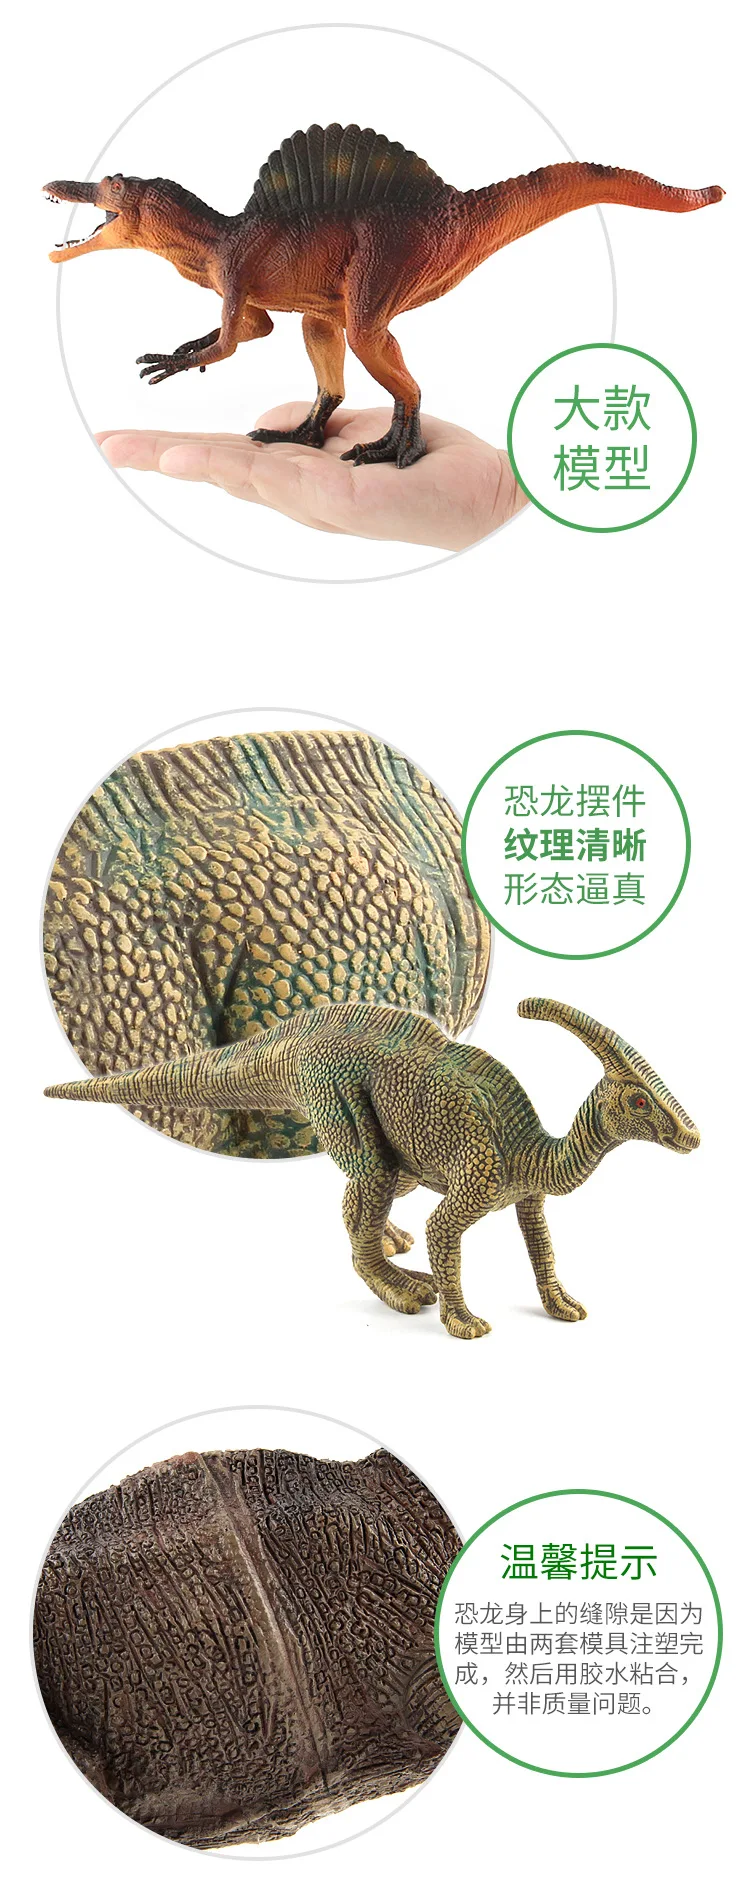 Пластиковая кукла тираннозавр из серии динозавров, статическая модель динозавра